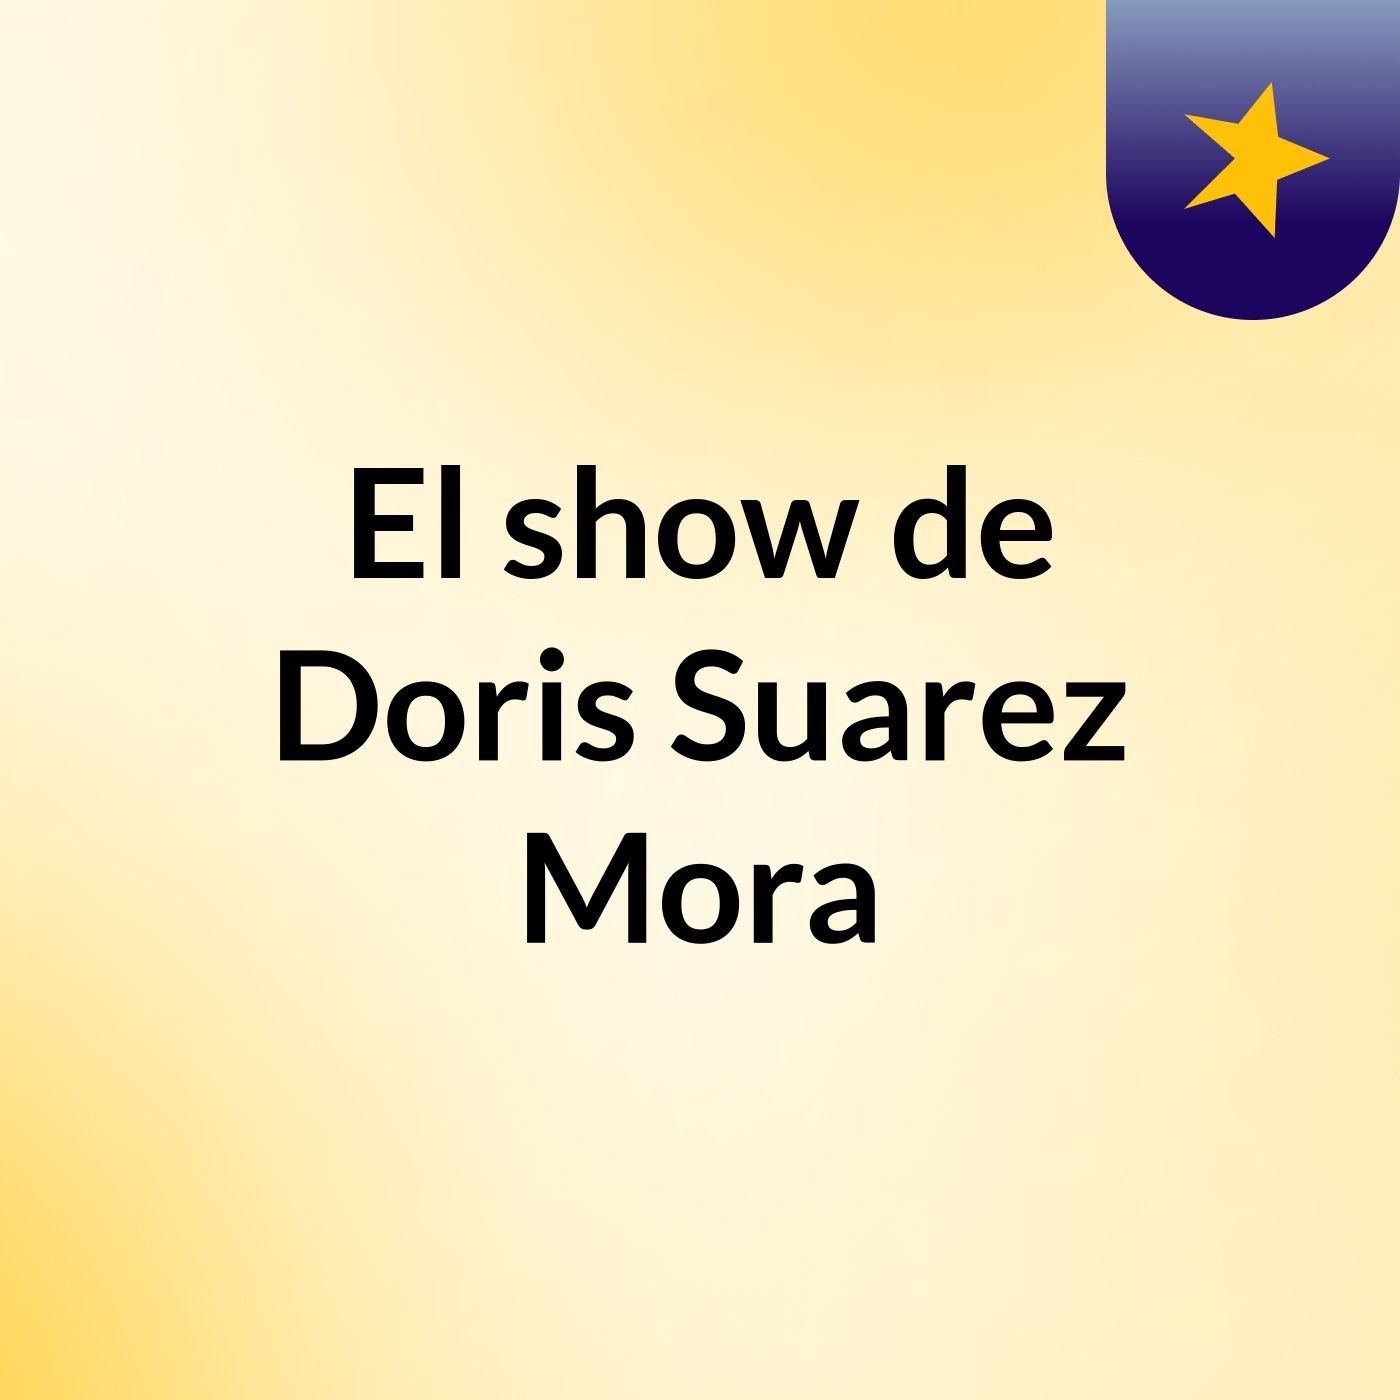 El show de Doris Suarez Mora